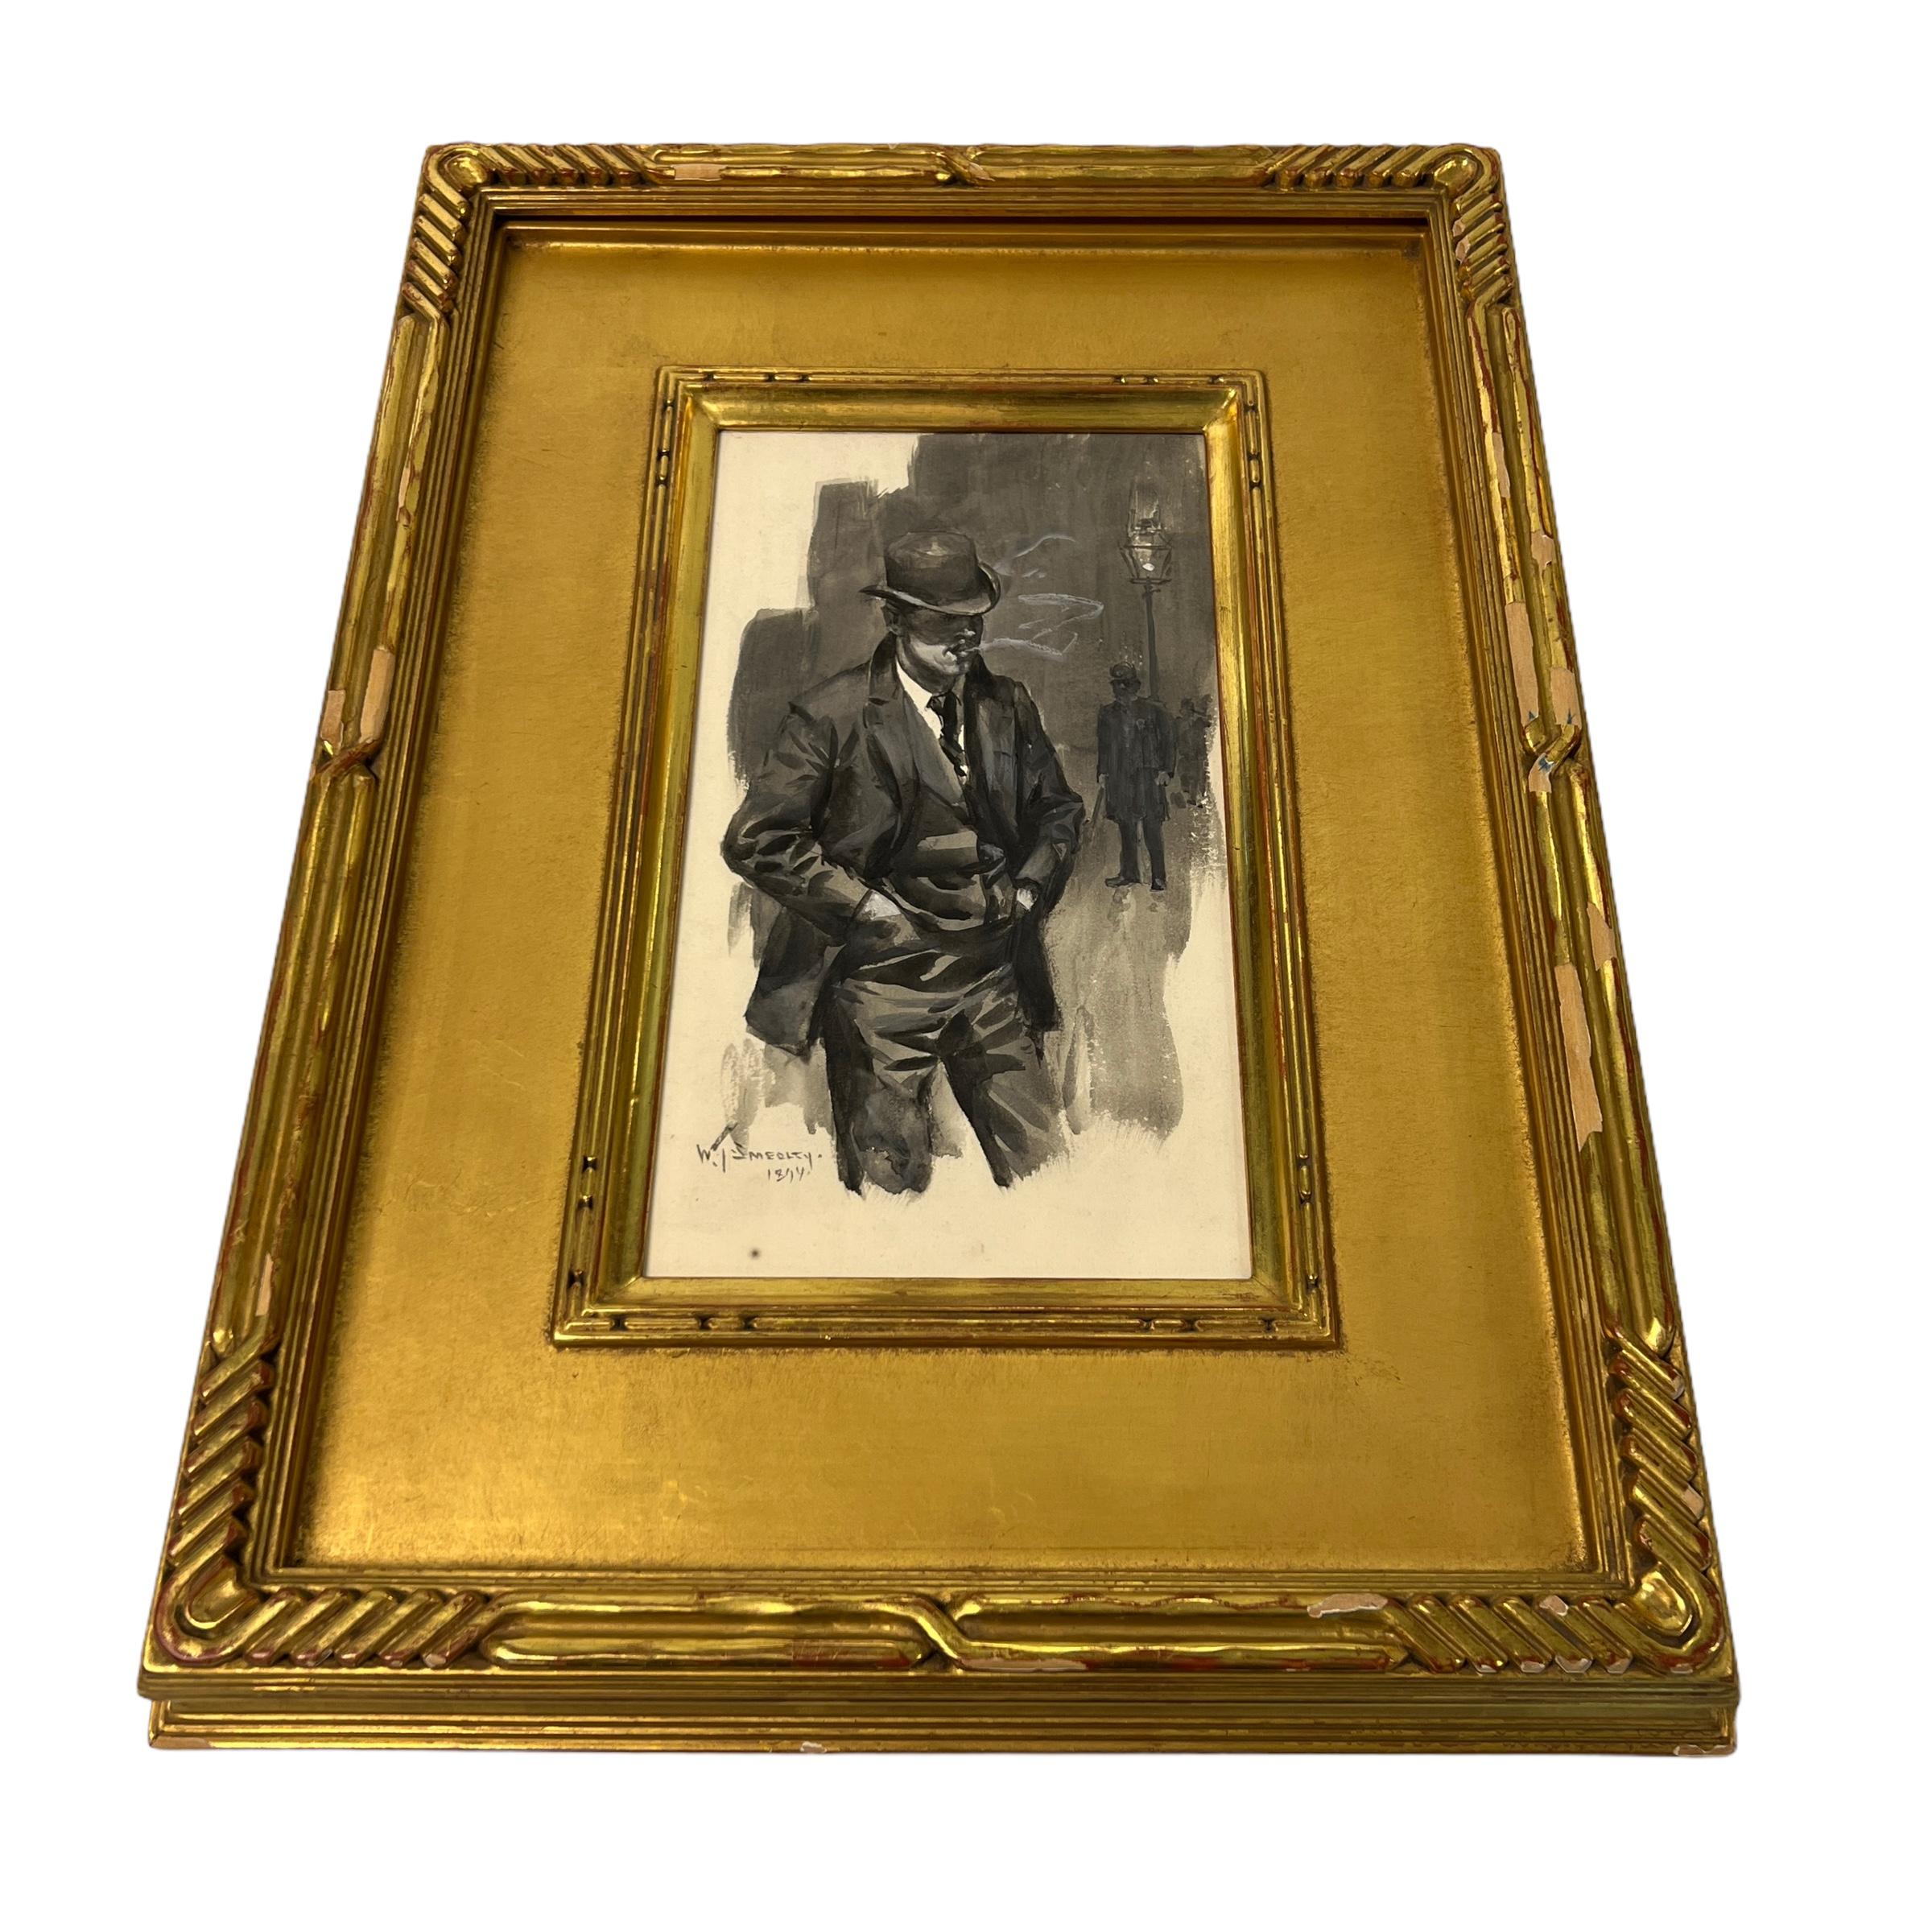 Notre aquarelle exceptionnelle sur papier, réalisée par le peintre et illustrateur américain William Thomas Smedley (1858-1920), représente un gentleman fumeur distingué debout à côté d'un lampadaire. Signé et daté 1894. Monté dans un cadre d'époque